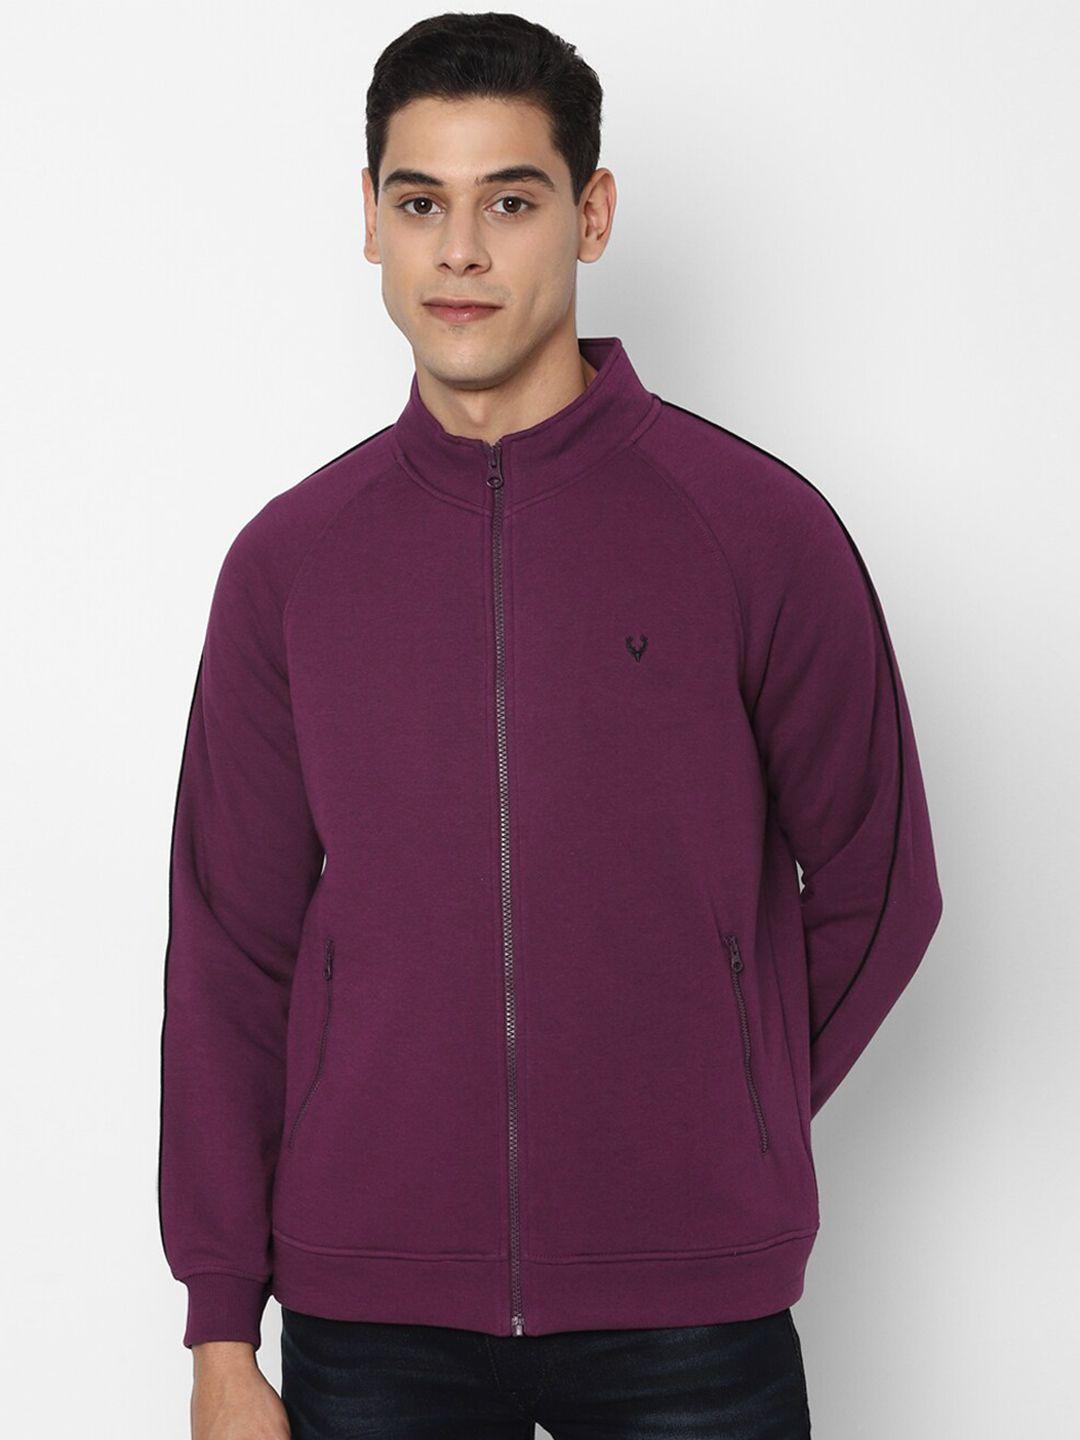 allen solly men purple sweatshirt